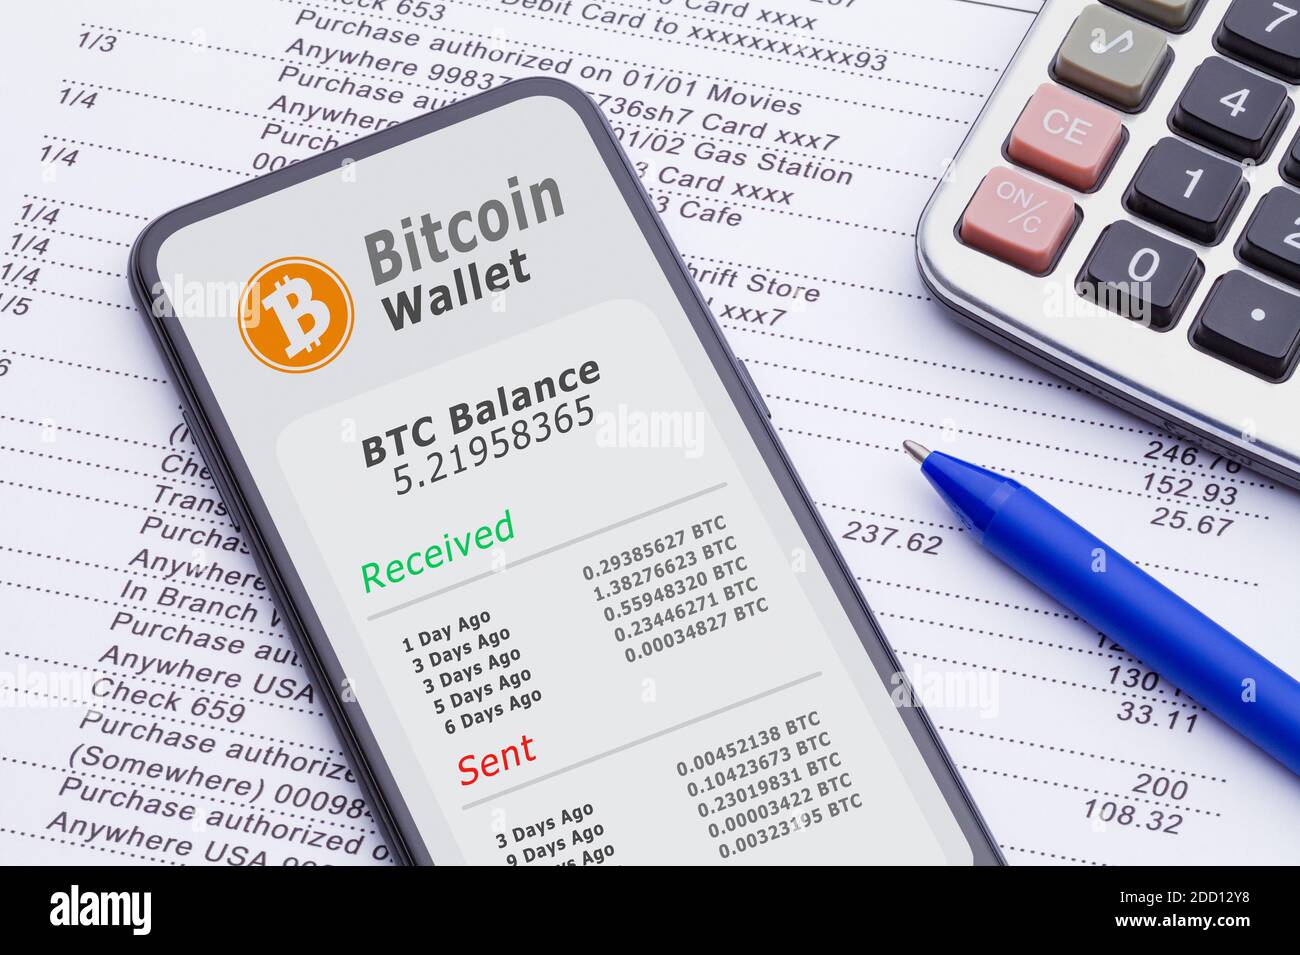 Smartphone mit Bitcoin Wallet auf Kontoauszug mit Rechner und Stift  Stockfotografie - Alamy